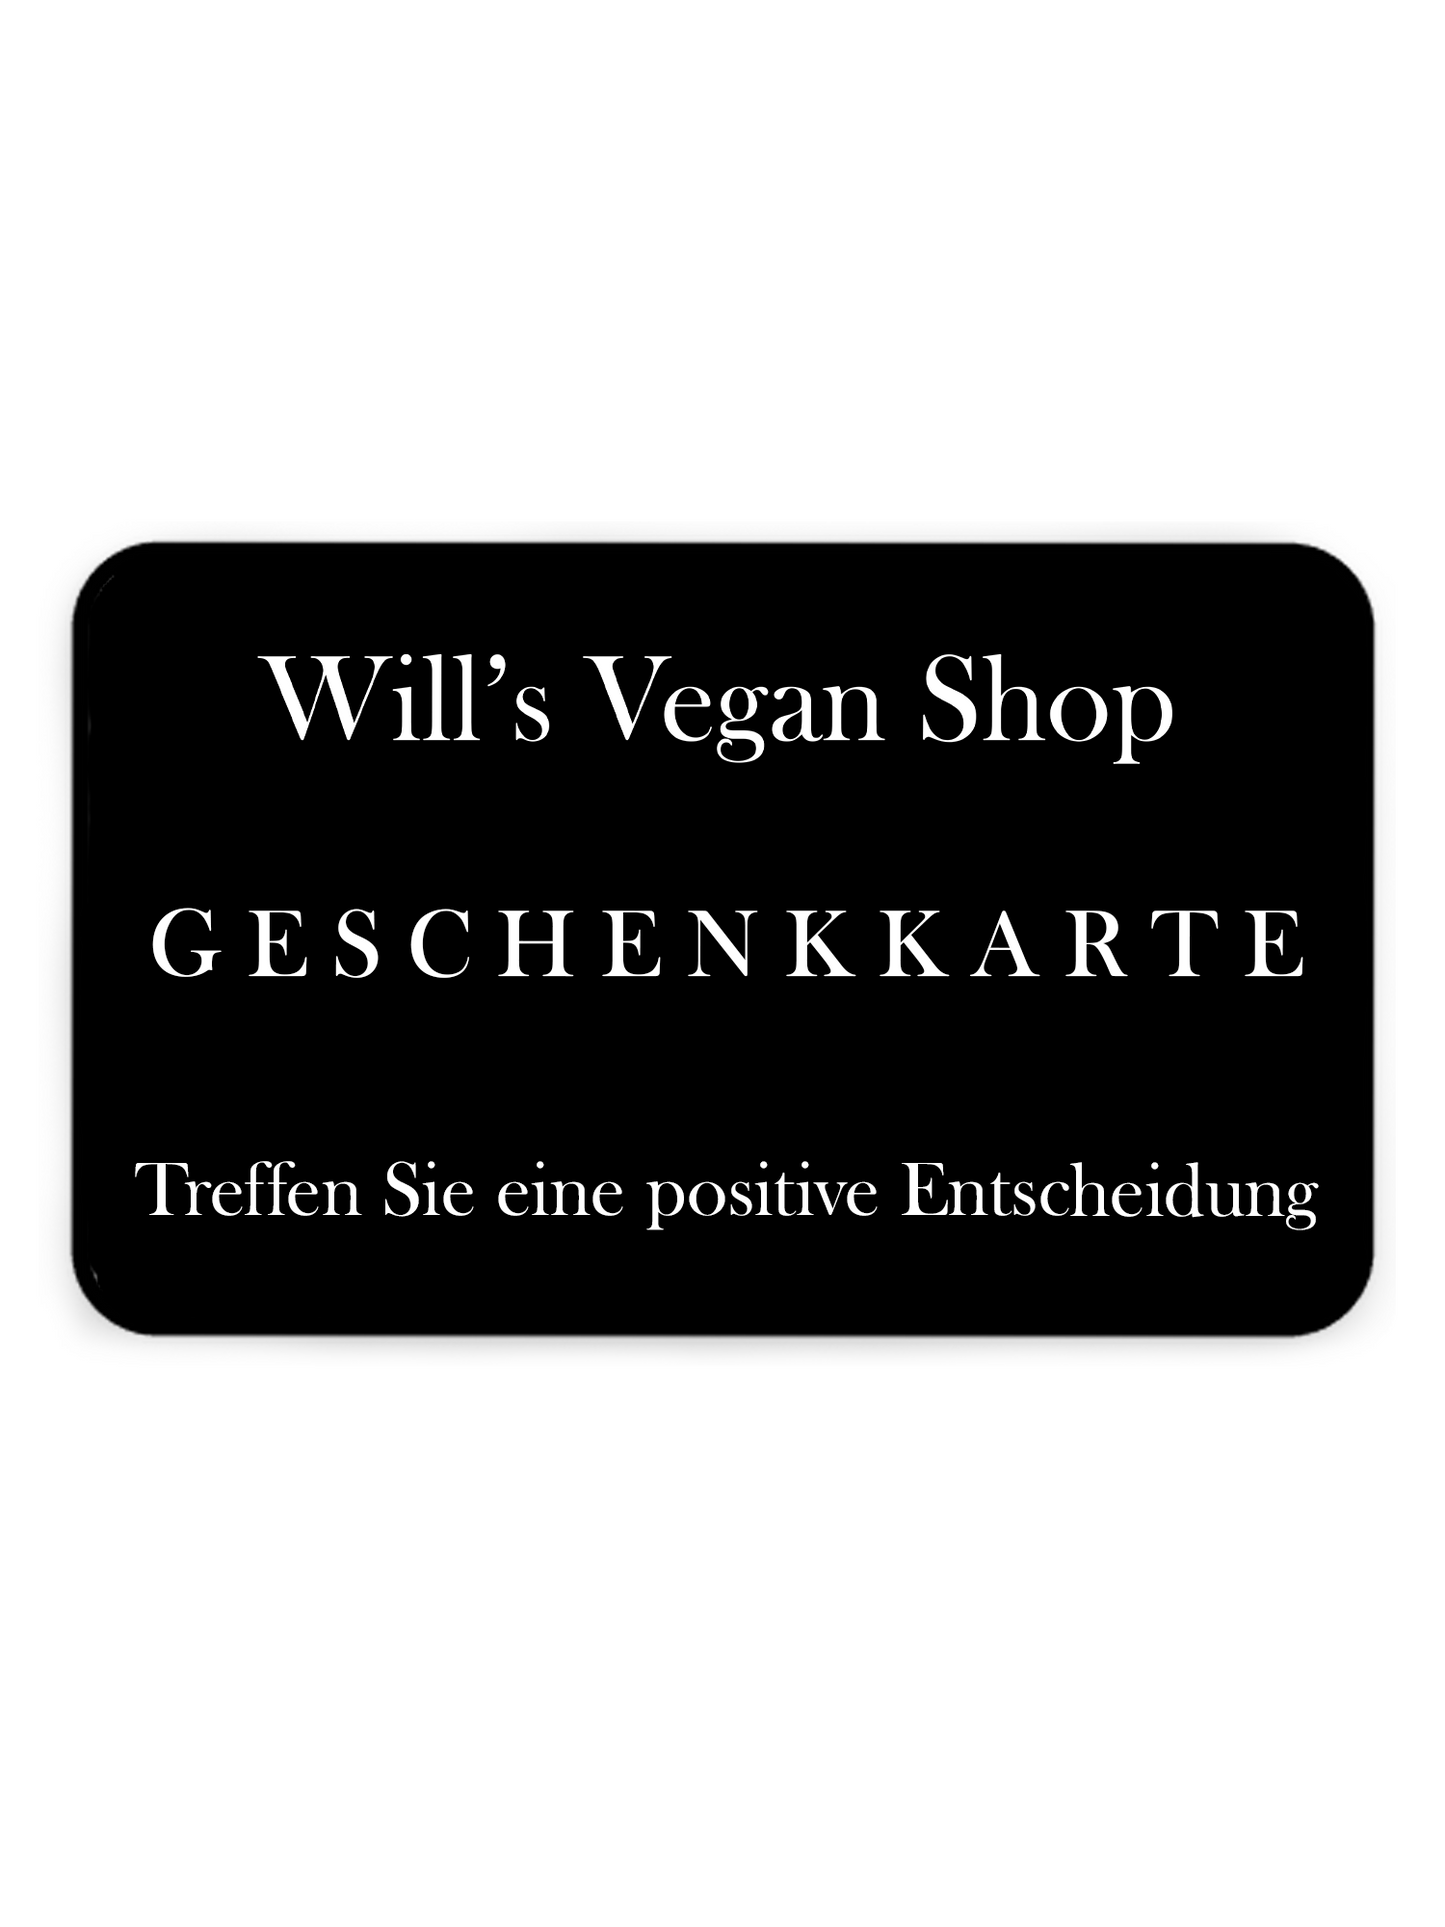 Will's Vegan Shop Geschenkkarte